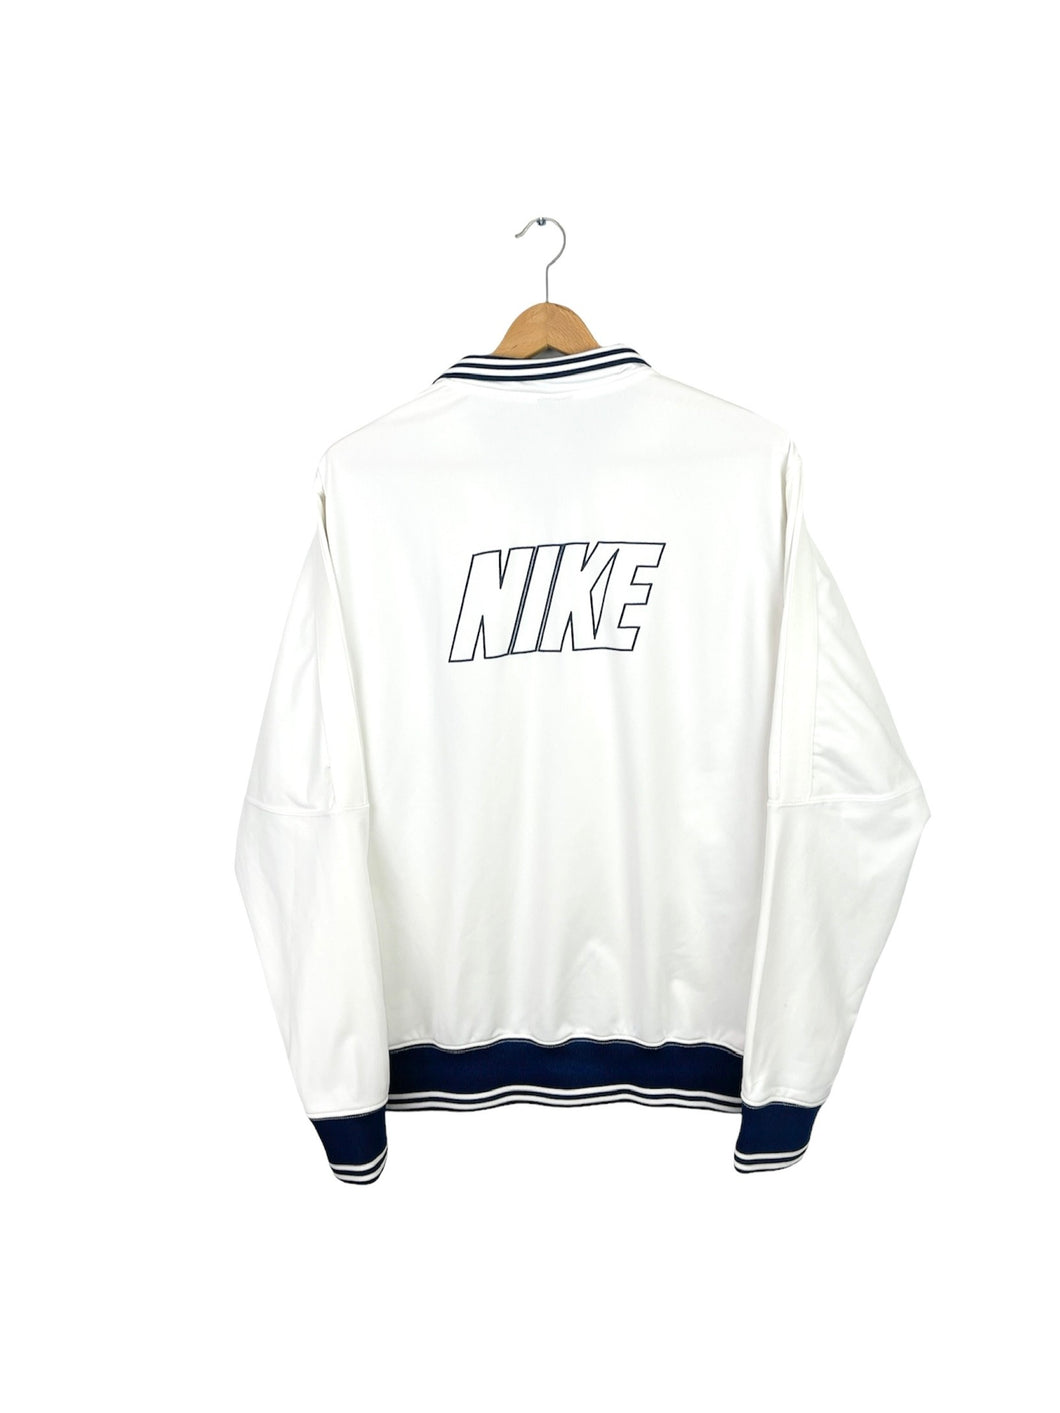 Nike Jacket - Large